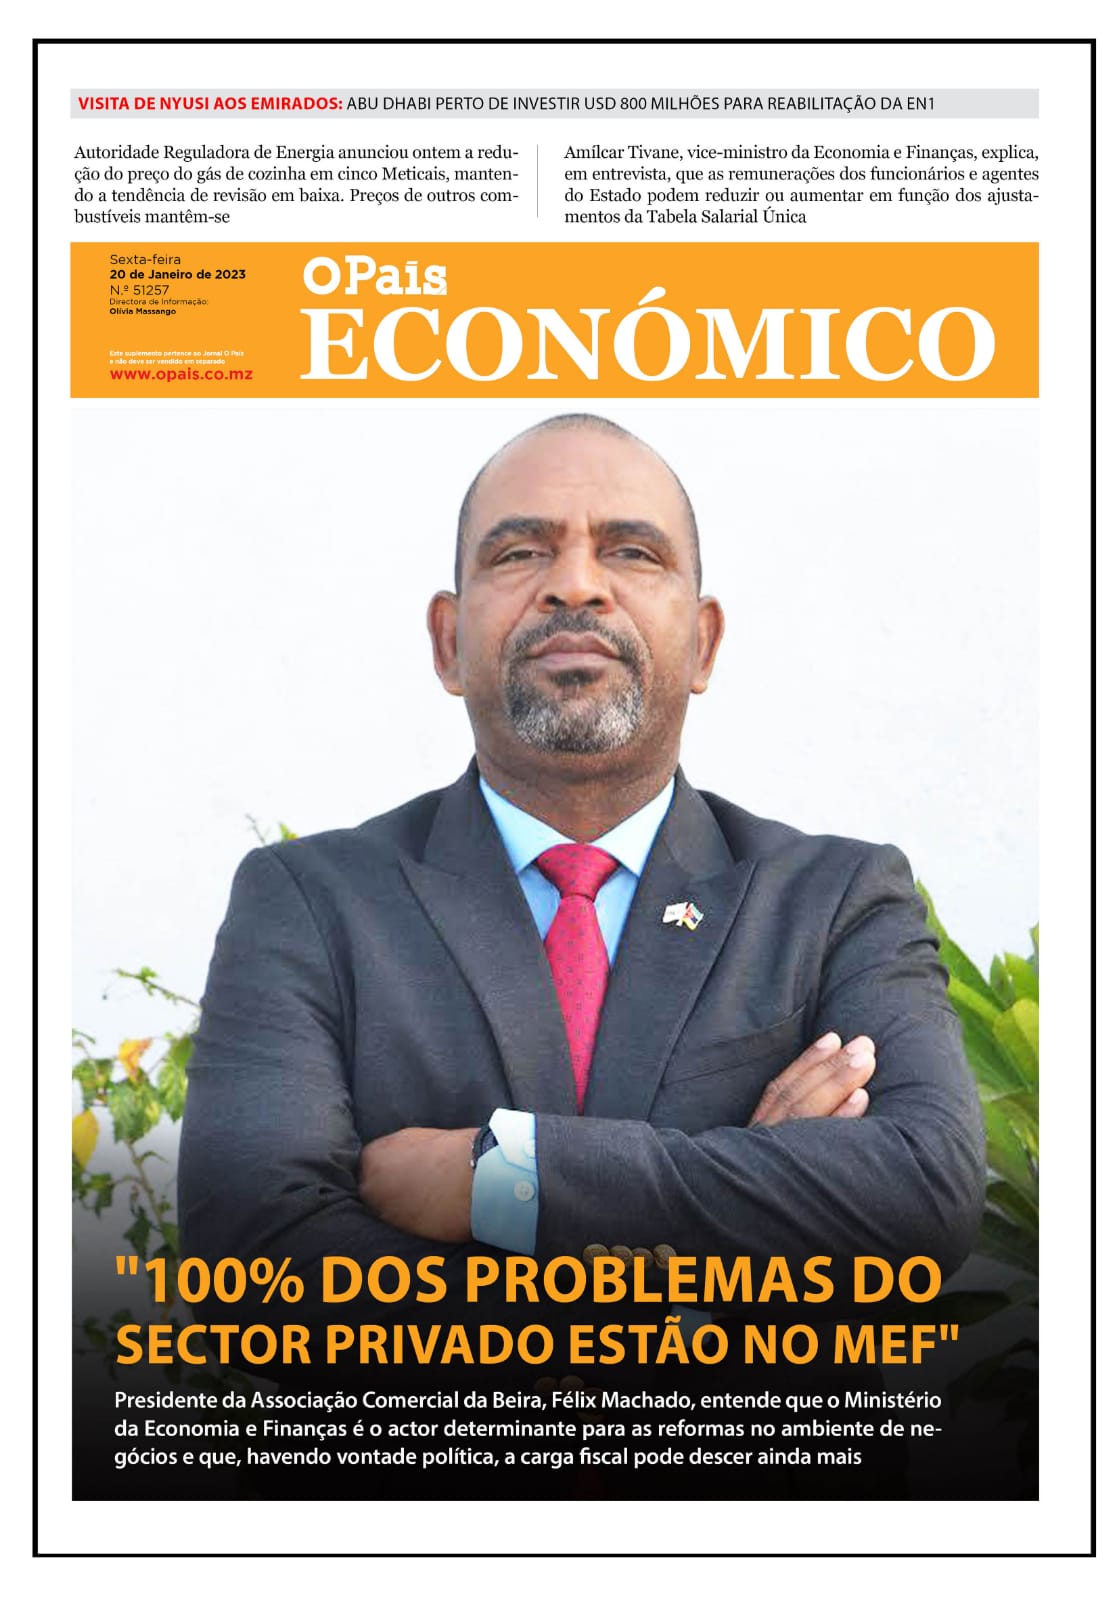 Capa Do Jornal Económico 20 01 2023 O País A Verdade Como Notícia